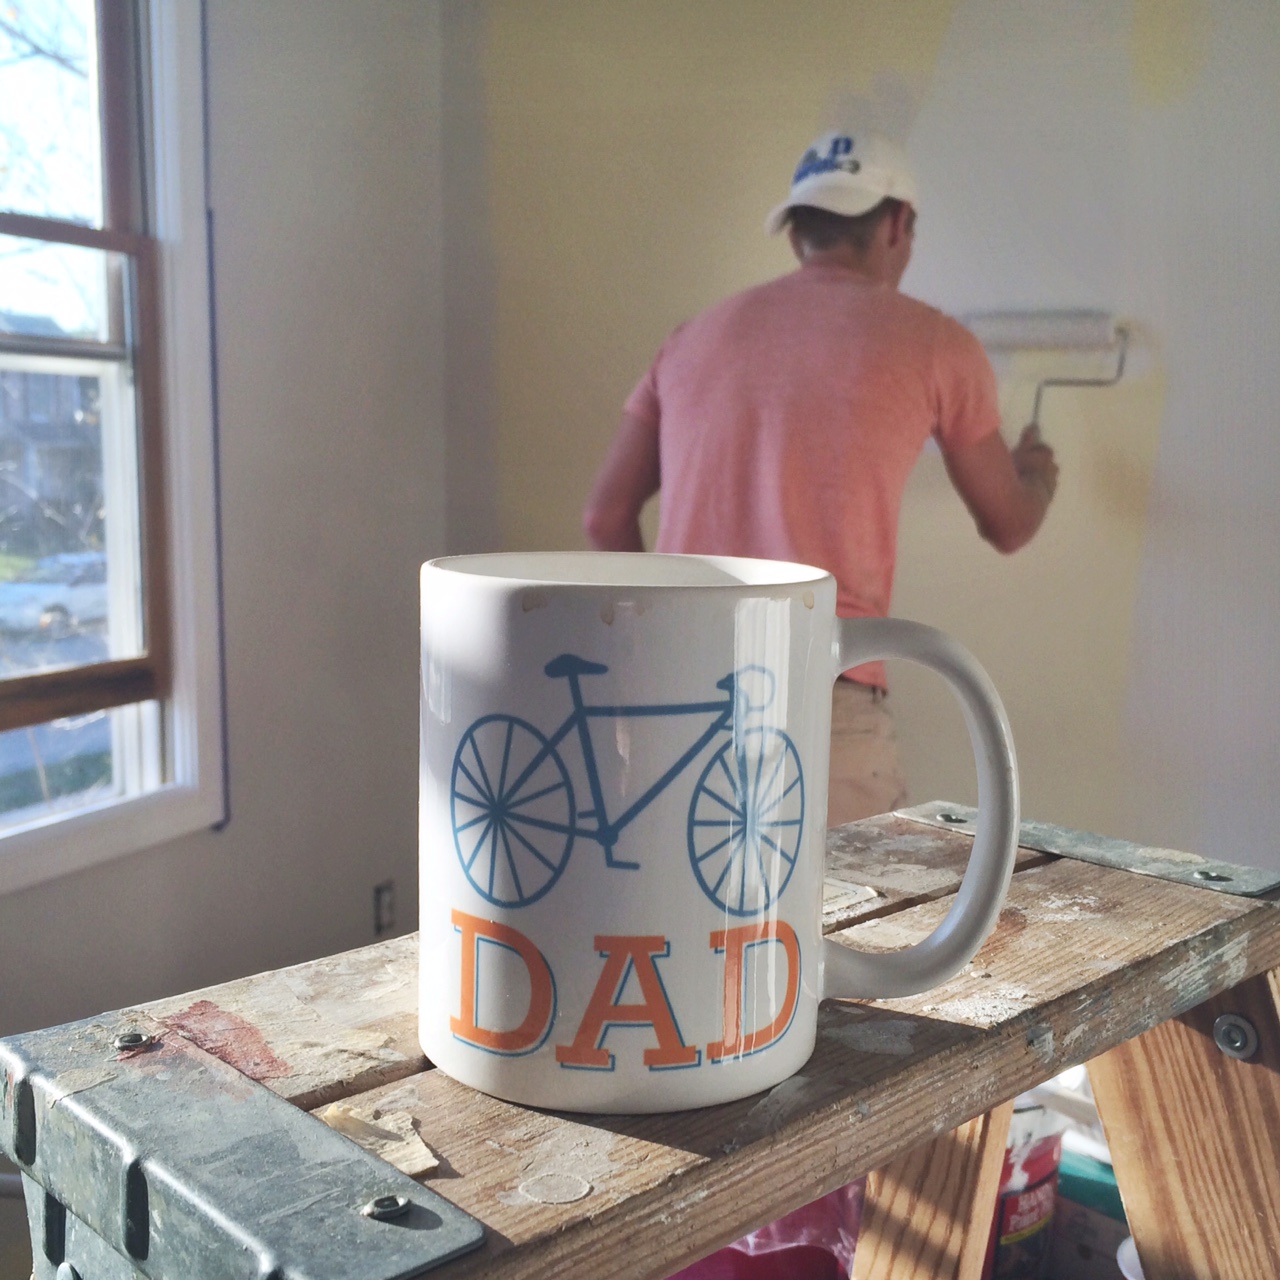 Jordan Painting Nursery With Dad Mug